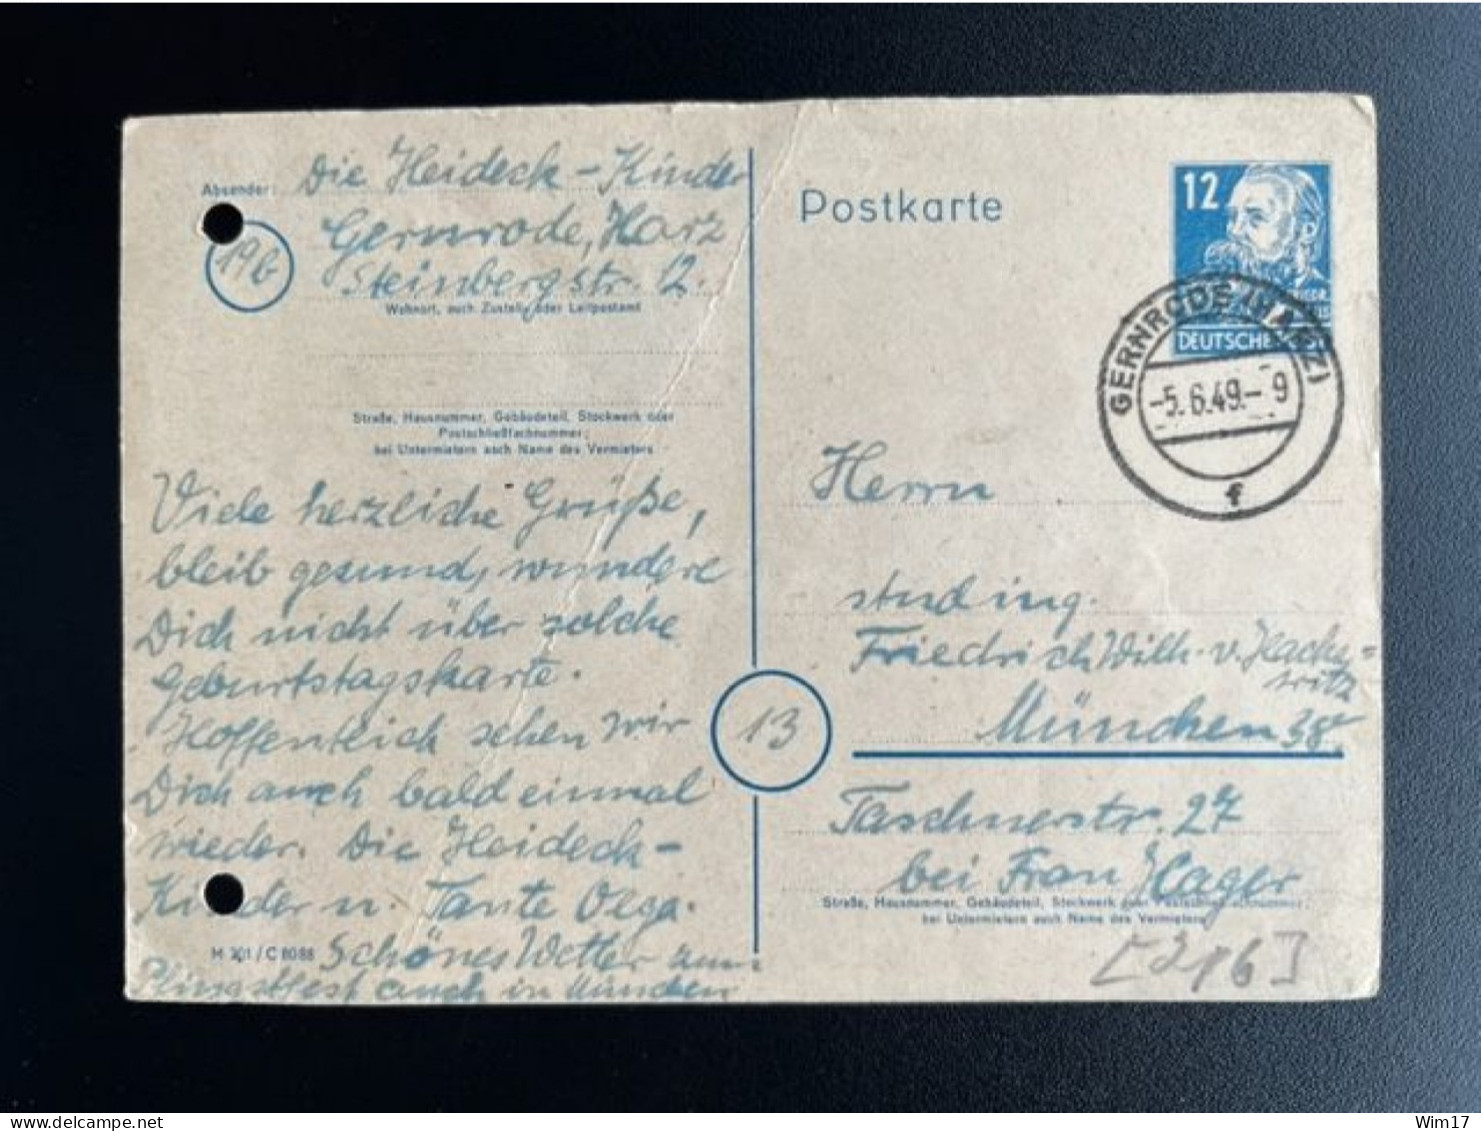 GERMANY 1949 POSTCARD GERNRODE TO MUNCHEN 05-06-1949 DUITSLAND DEUTSCHLAND - Postwaardestukken